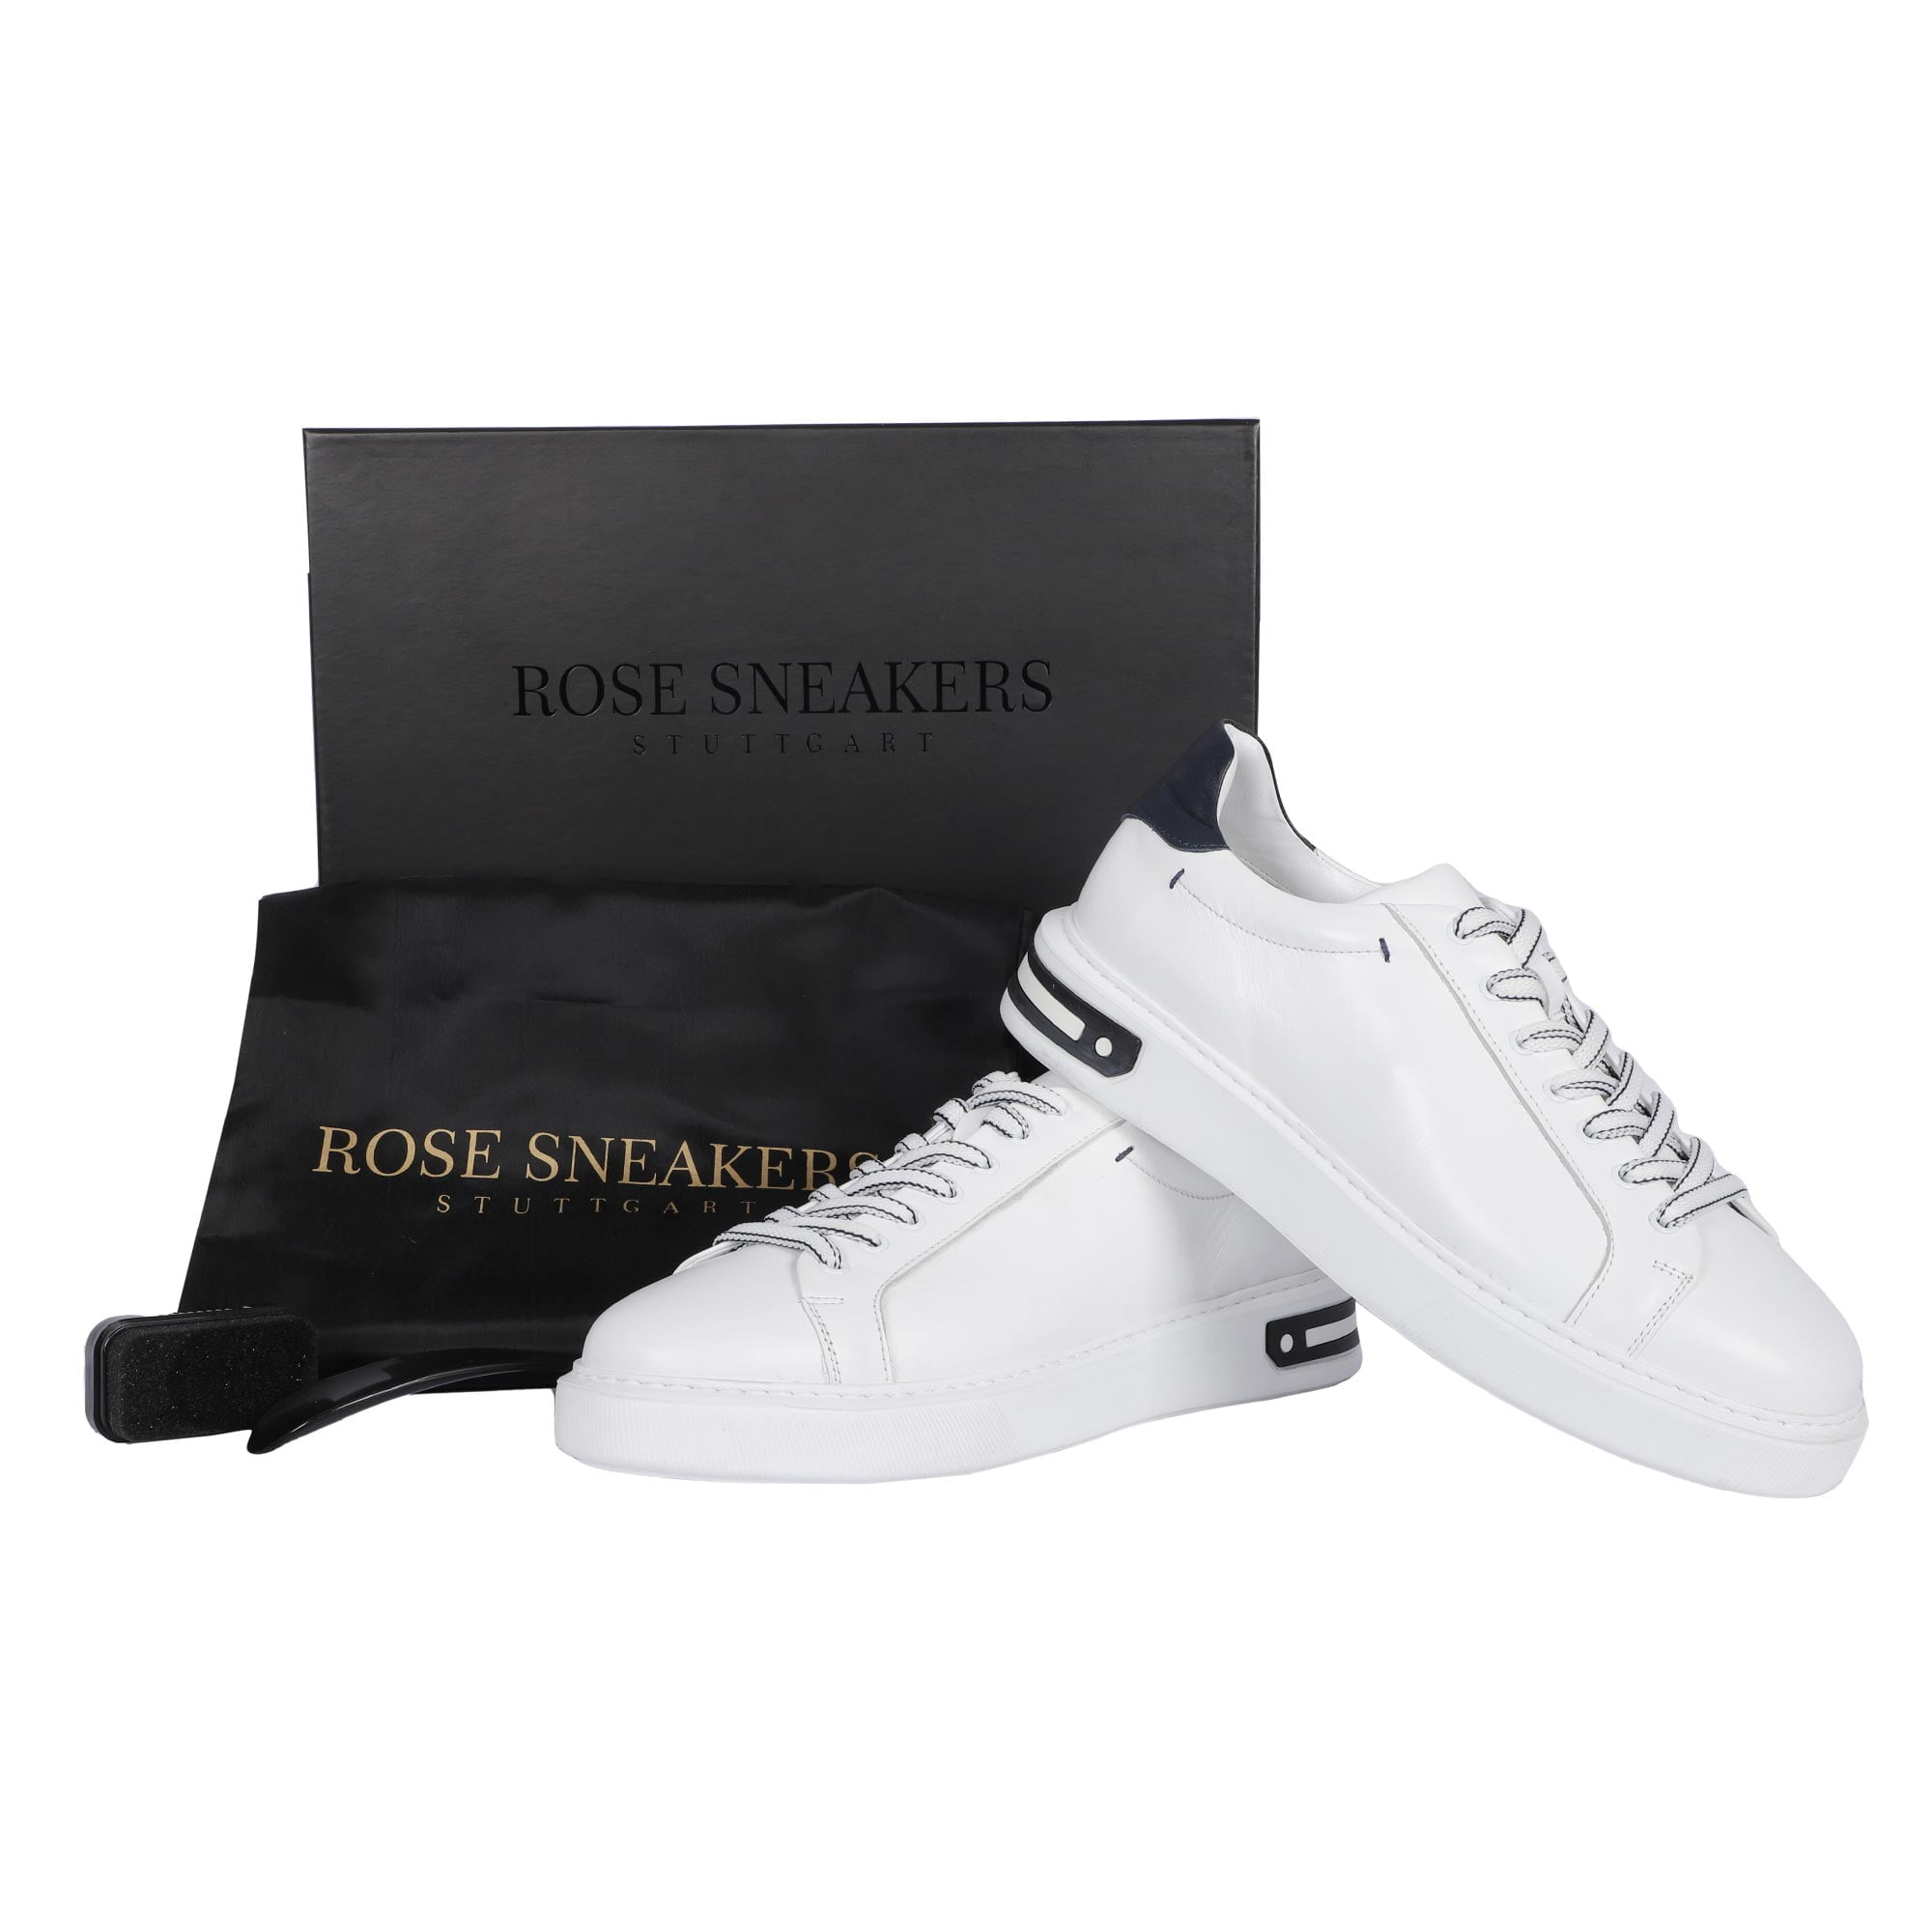 Rose-Sneakers-Schuhprodukt-Fotografie4